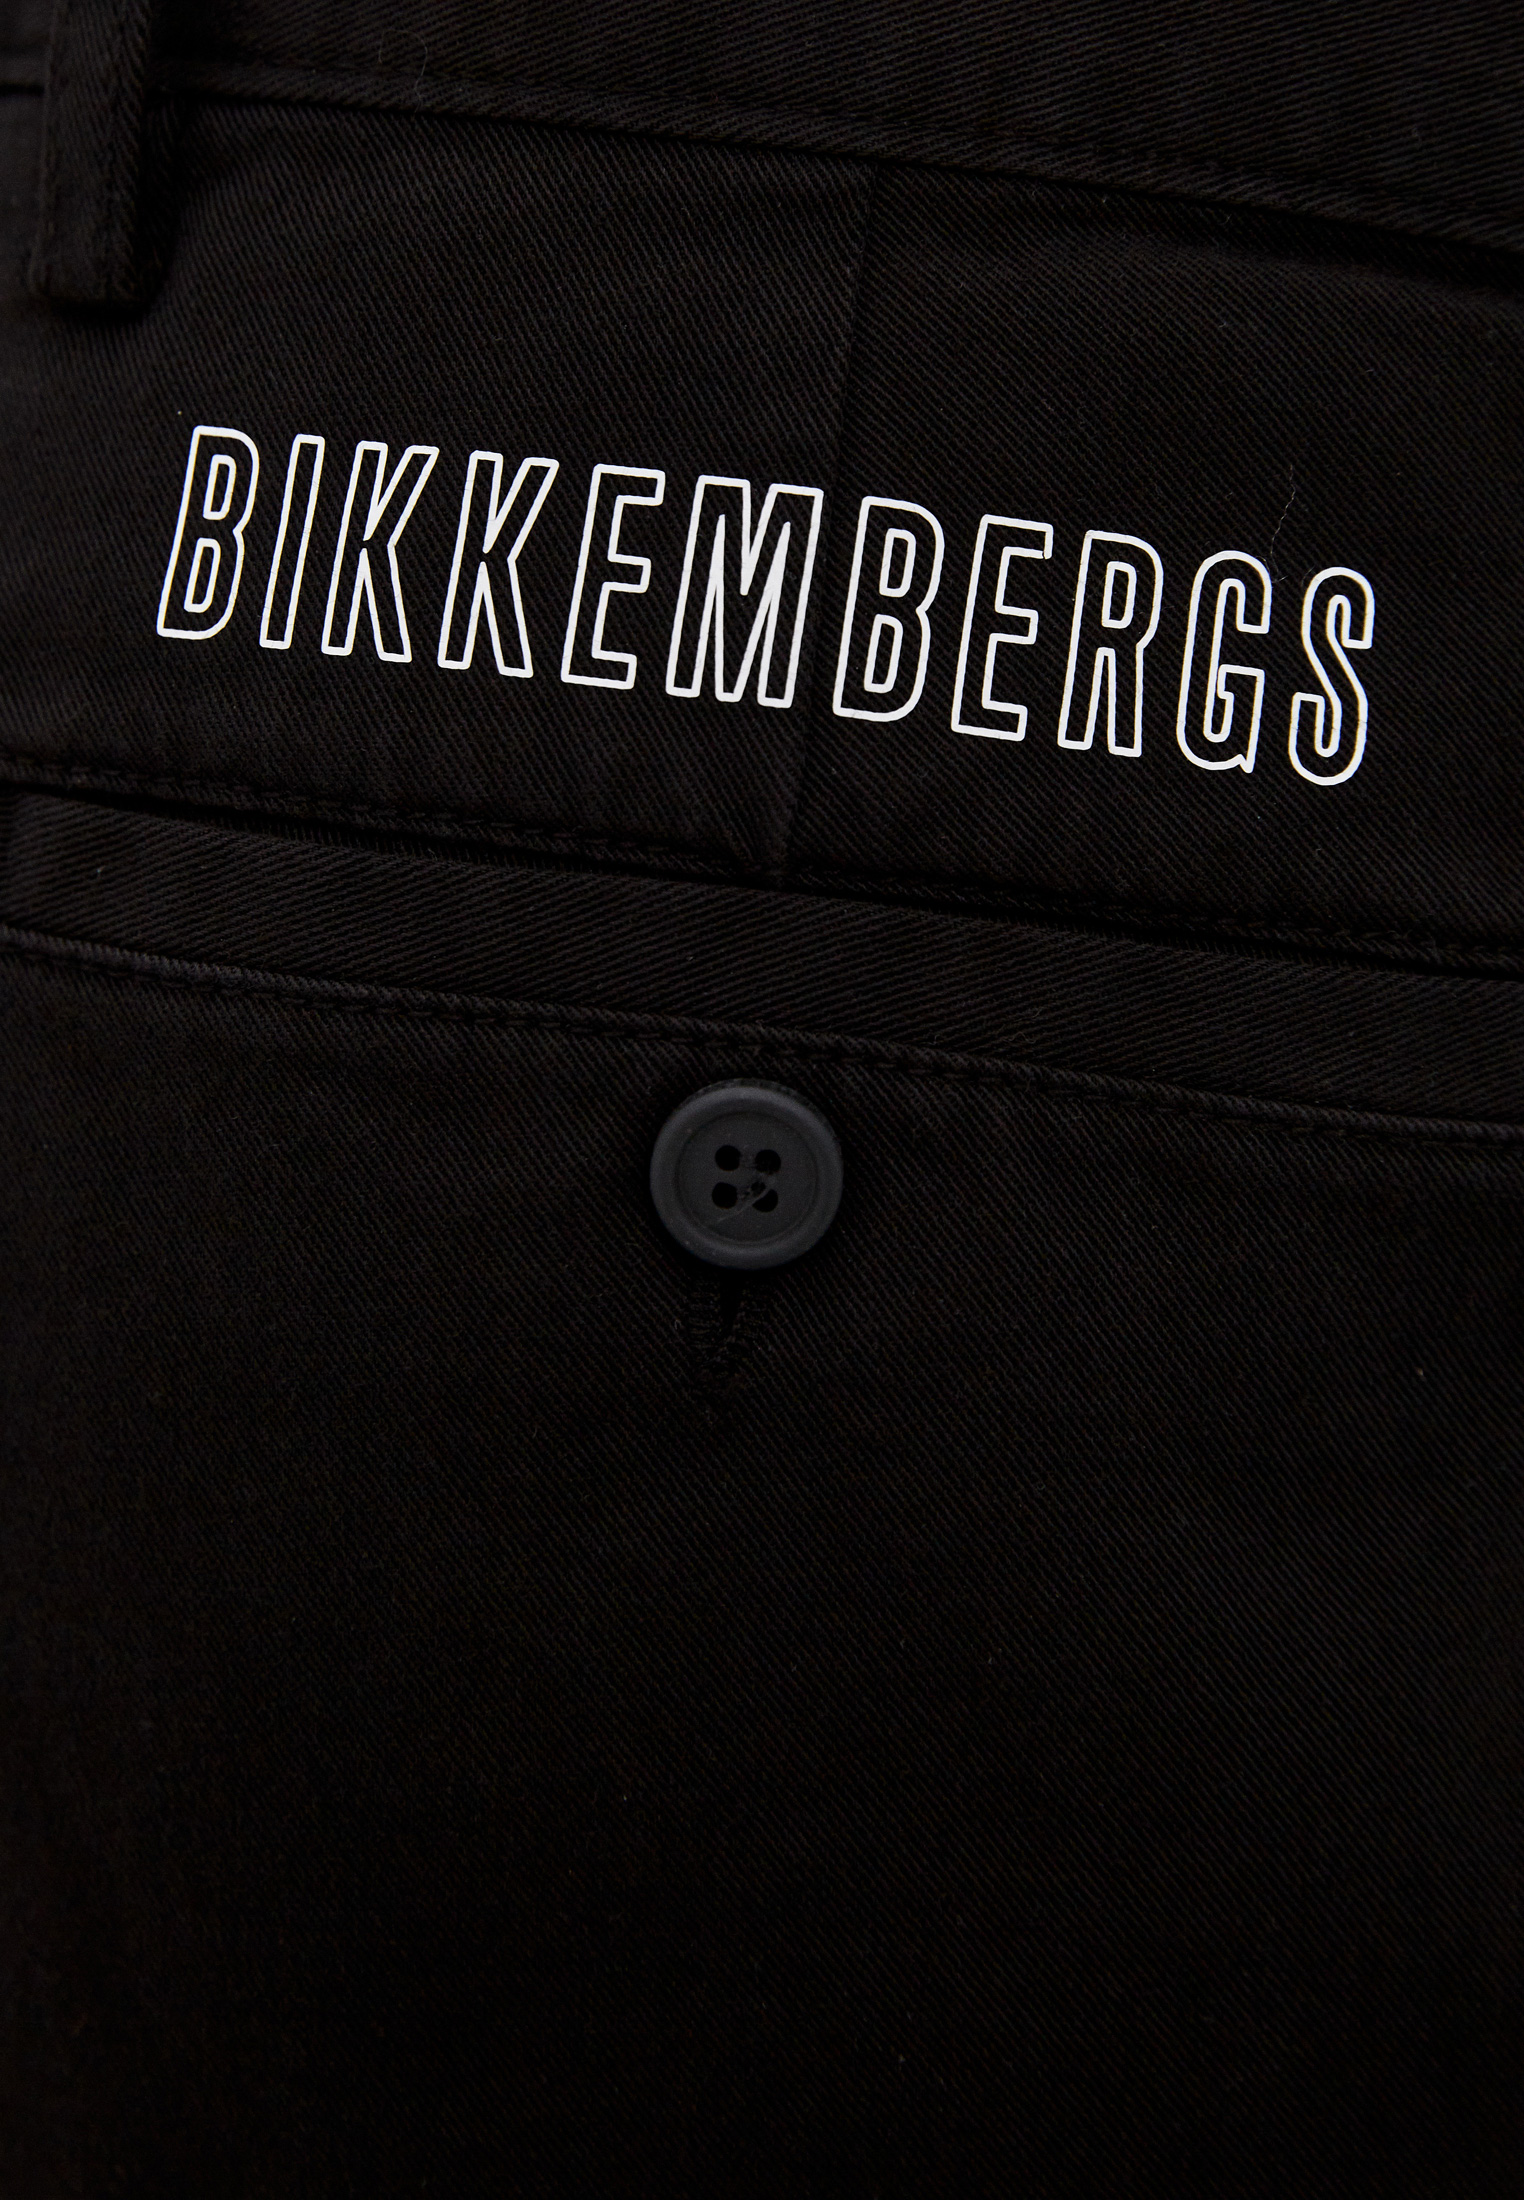 Мужские повседневные брюки Bikkembergs (Биккембергс) C P 001 01 S 3394: изображение 5